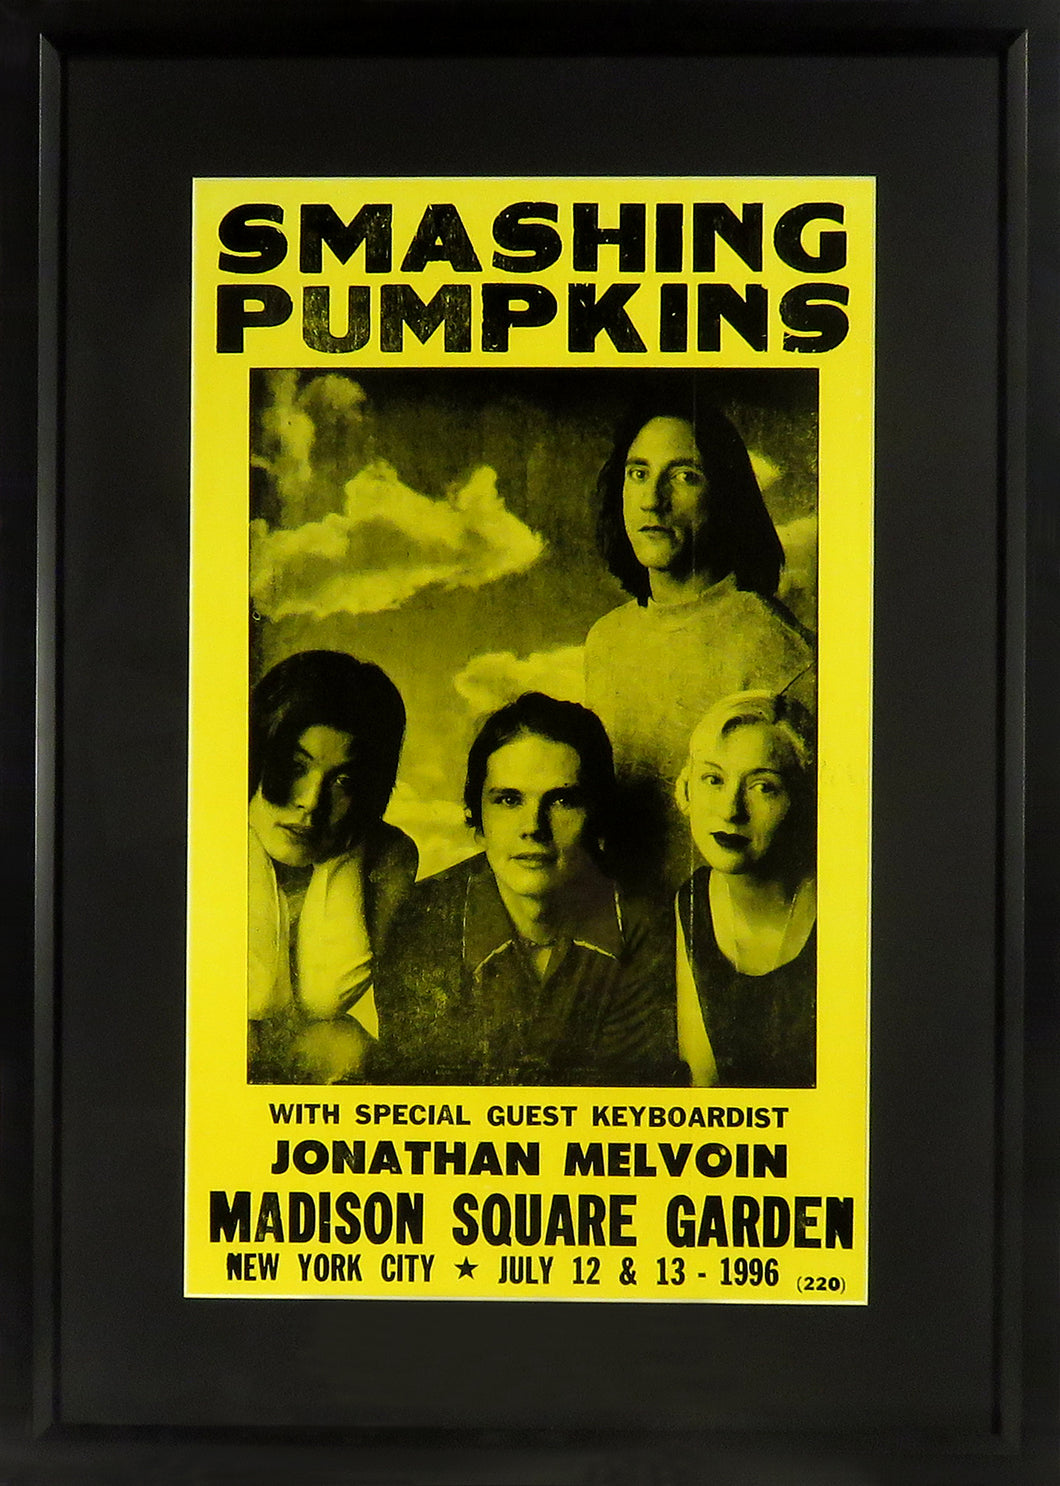 Smashing Pumpkins @ Madison Square Garden Framed Concert Poster (Engraved Series)